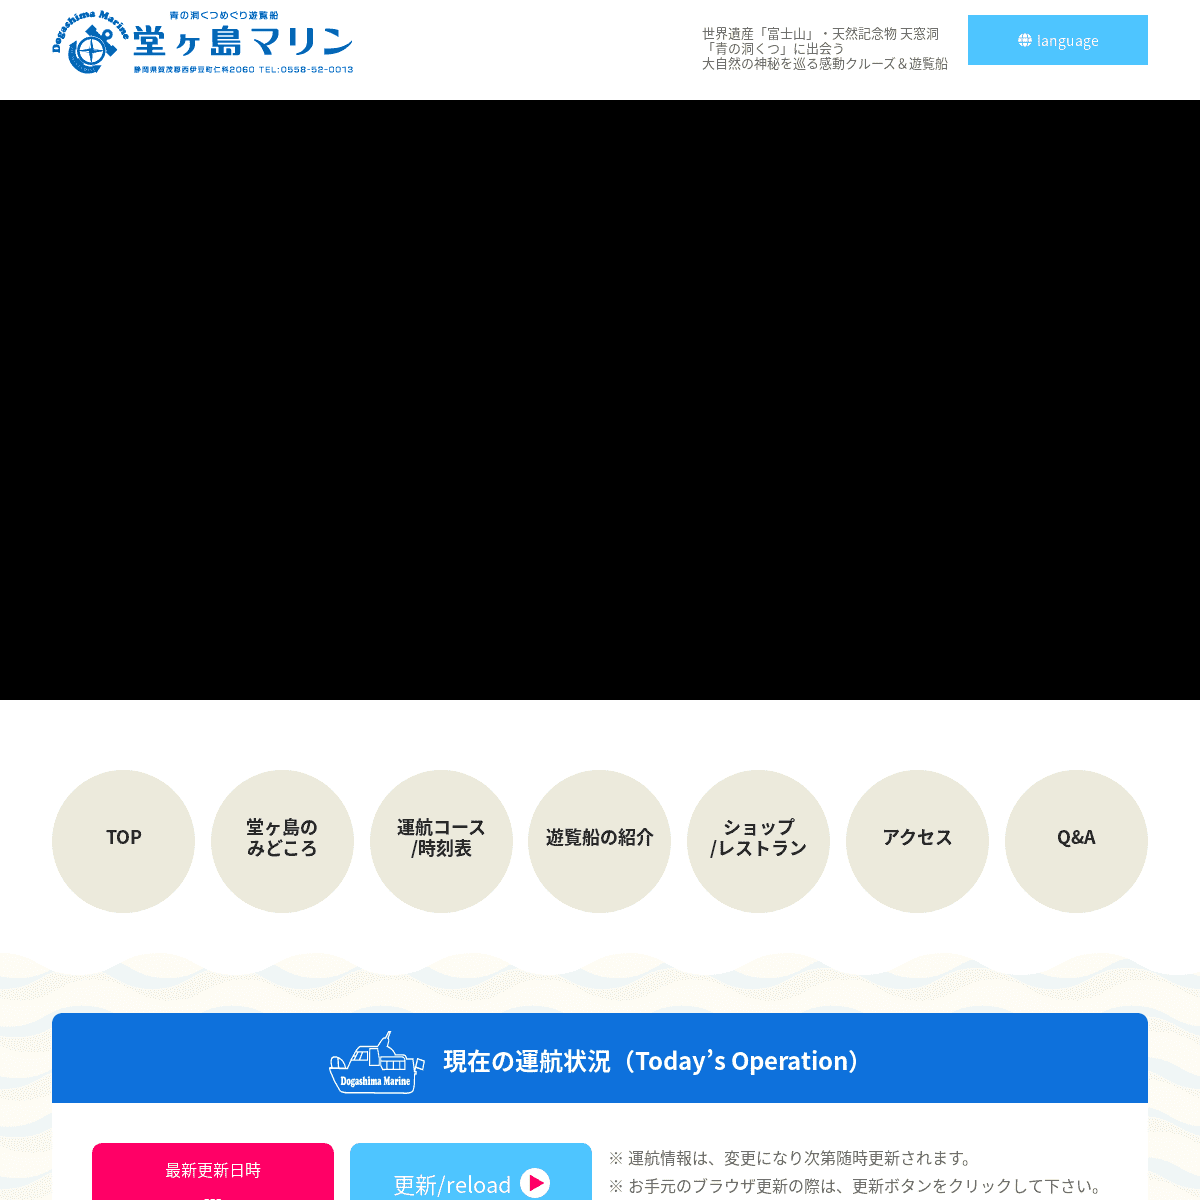 A complete backup of https://izudougasima-yuransen.com